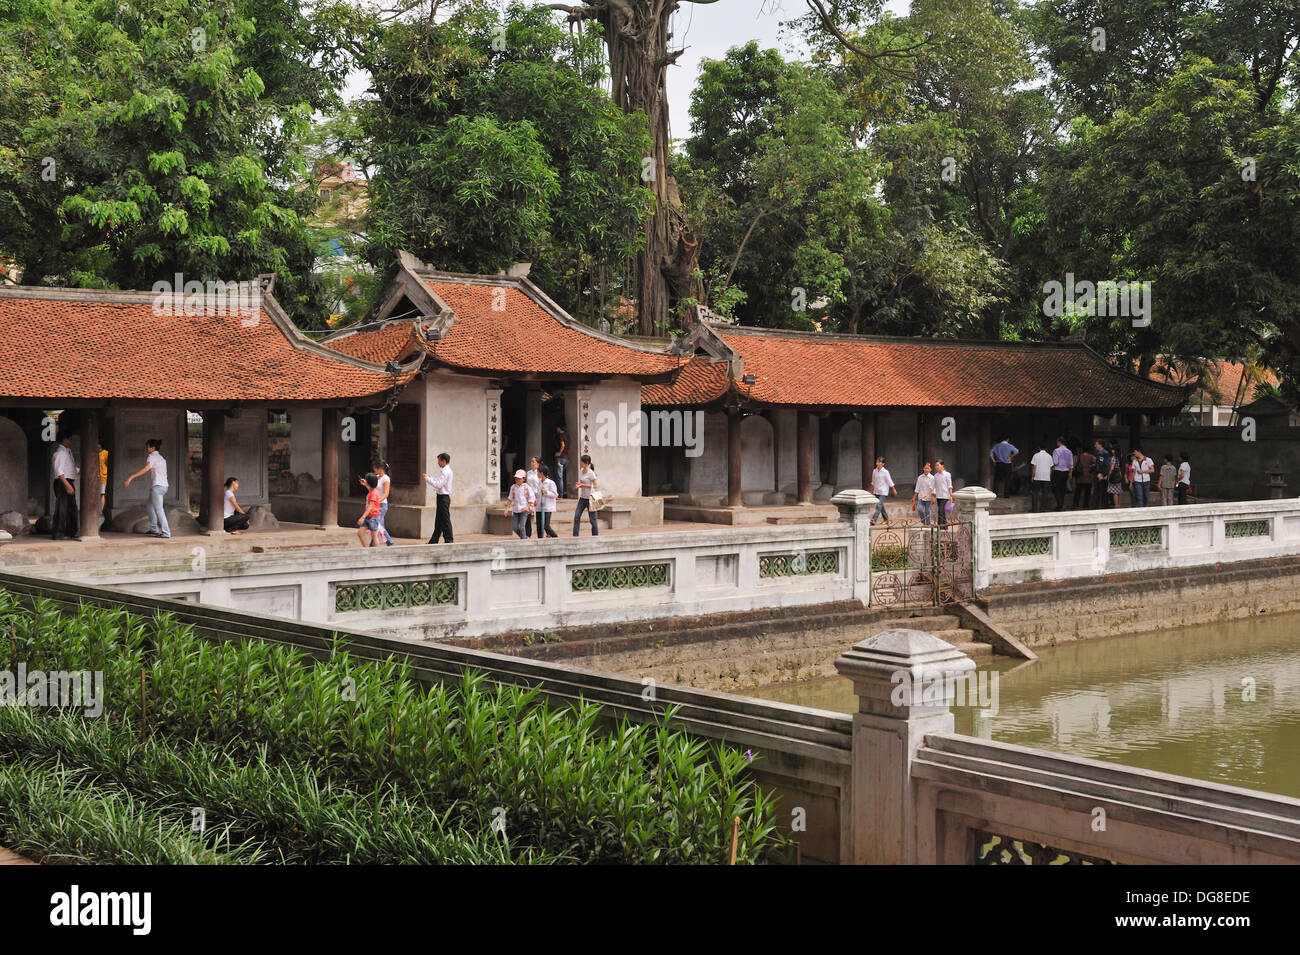 Gran estanque, denominado pozo de claridad celestial, tercer patio, el templo de la literatura, Hanoi, Vietnam del Norte, el sudeste de asia Foto de stock